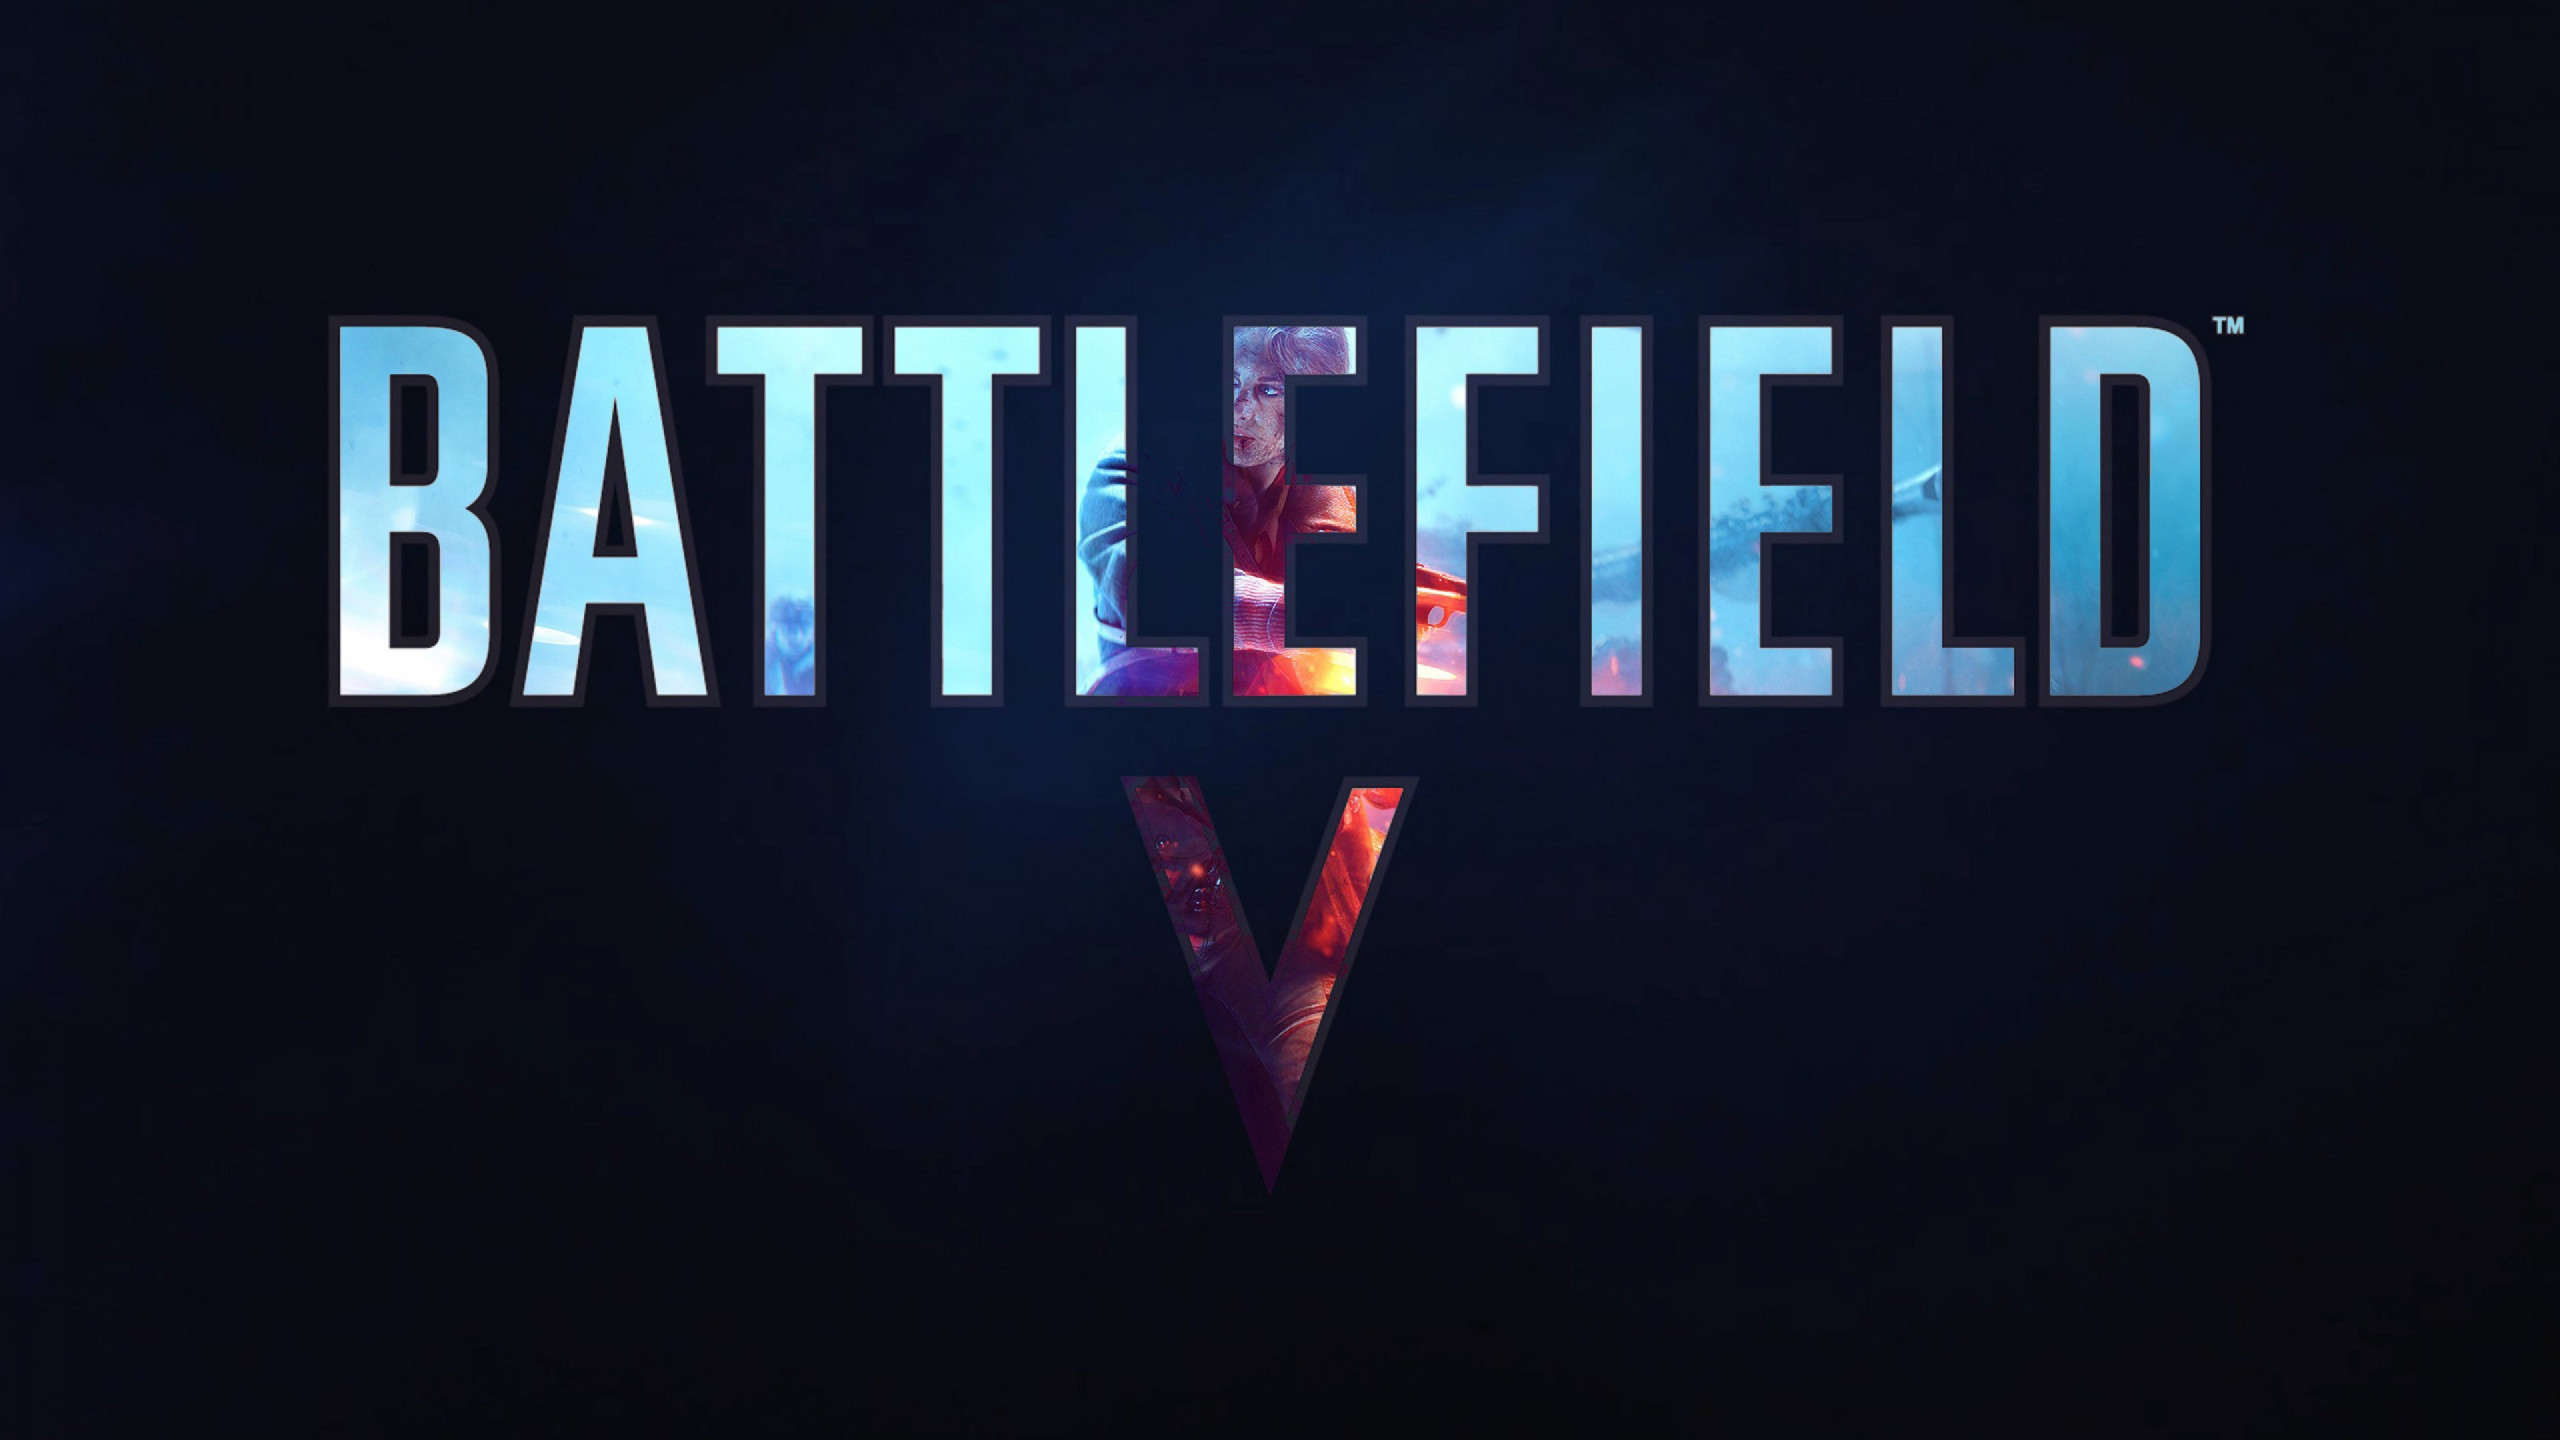 Battlefield V poster wallpaper 2560x1440